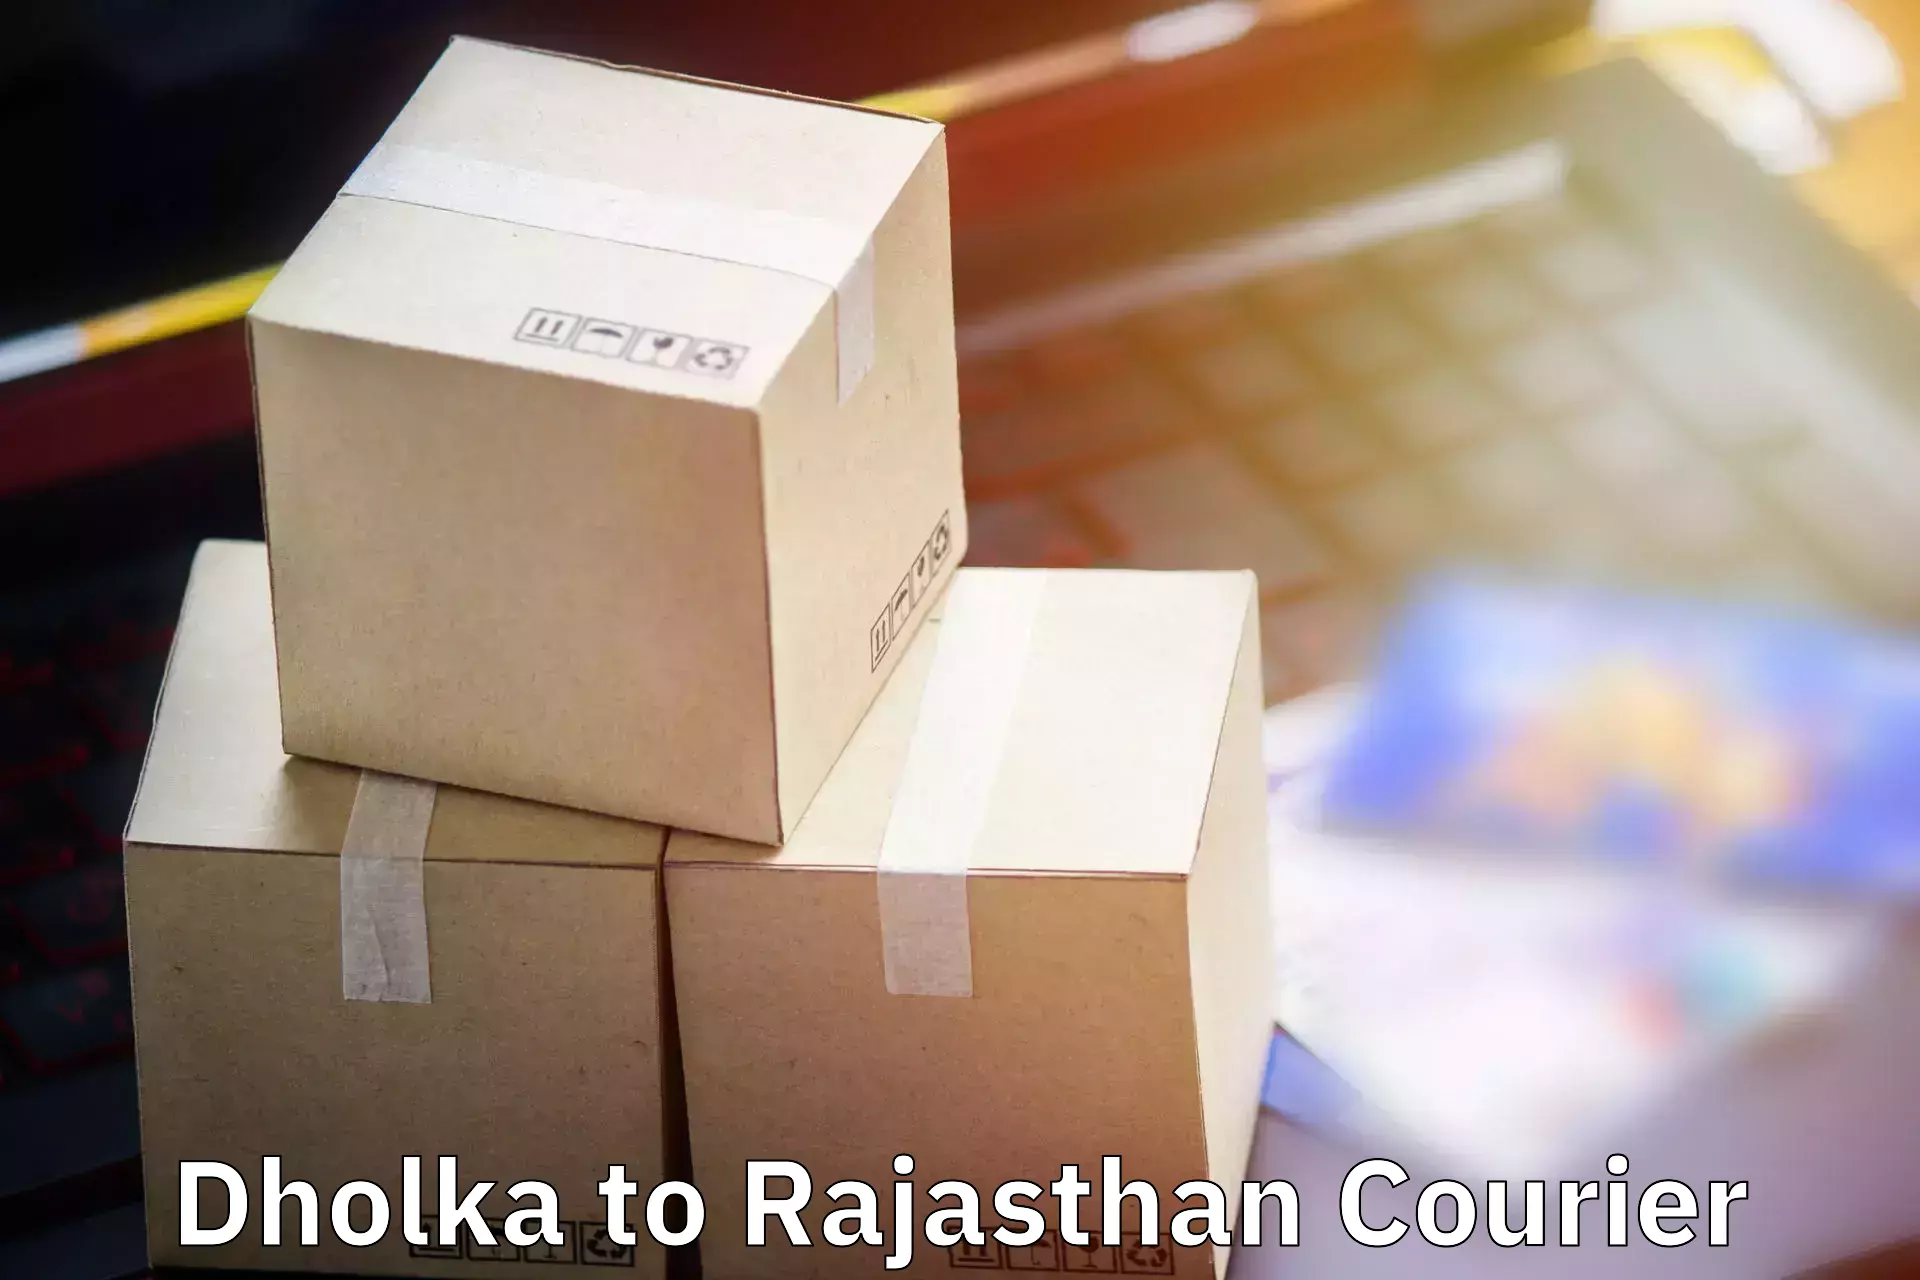 Baggage delivery management Dholka to Kotputli